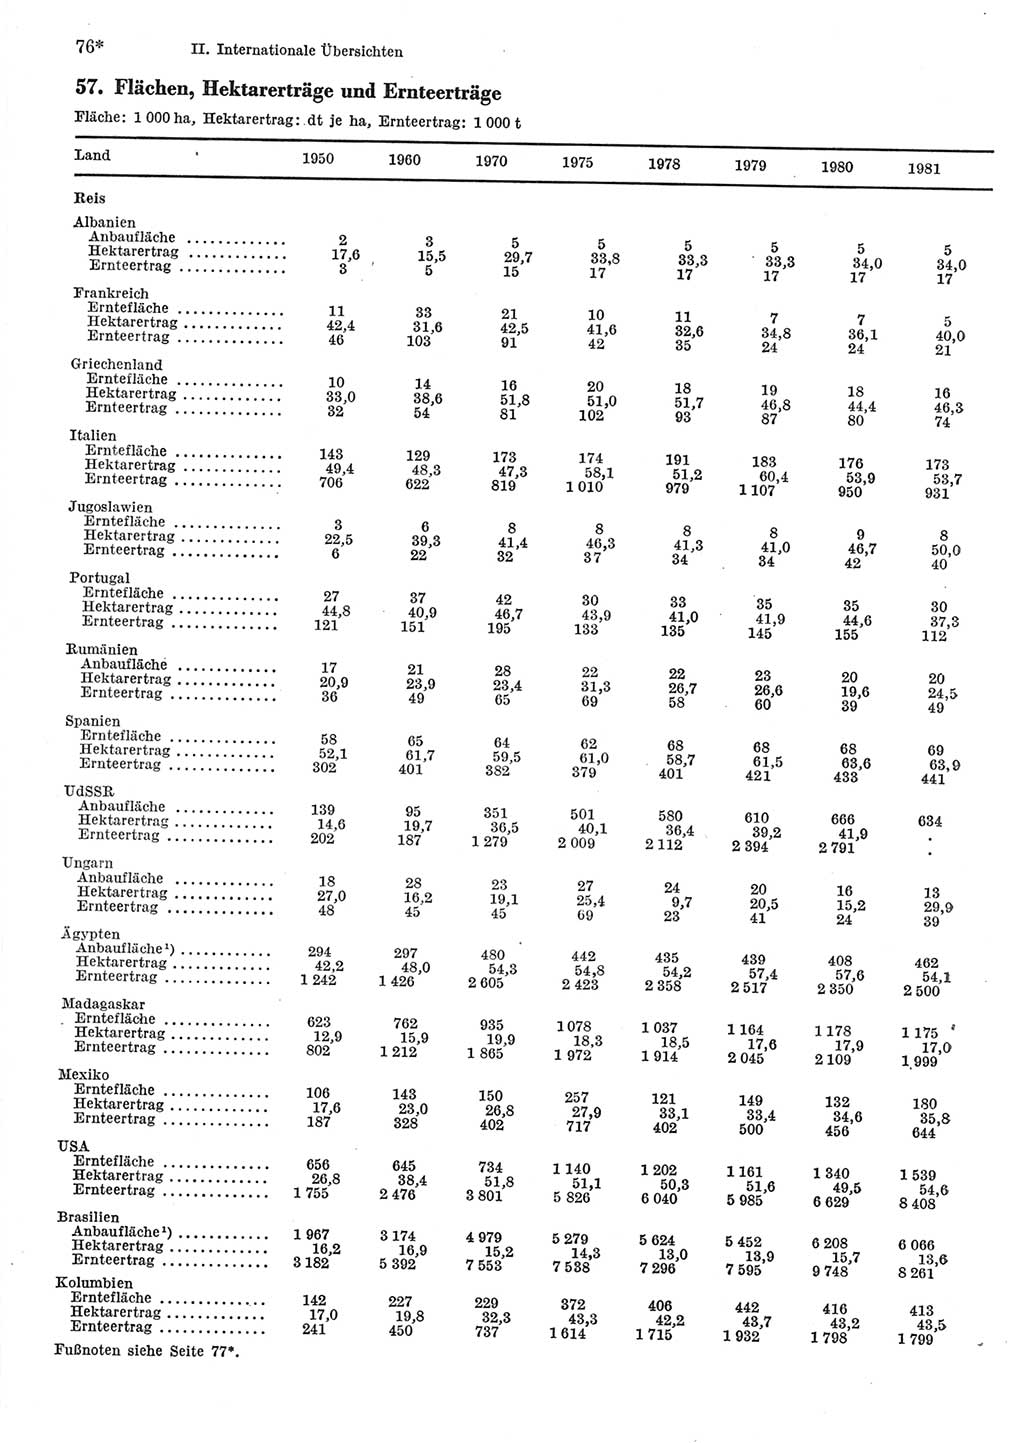 Statistisches Jahrbuch der Deutschen Demokratischen Republik (DDR) 1983, Seite 76 (Stat. Jb. DDR 1983, S. 76)